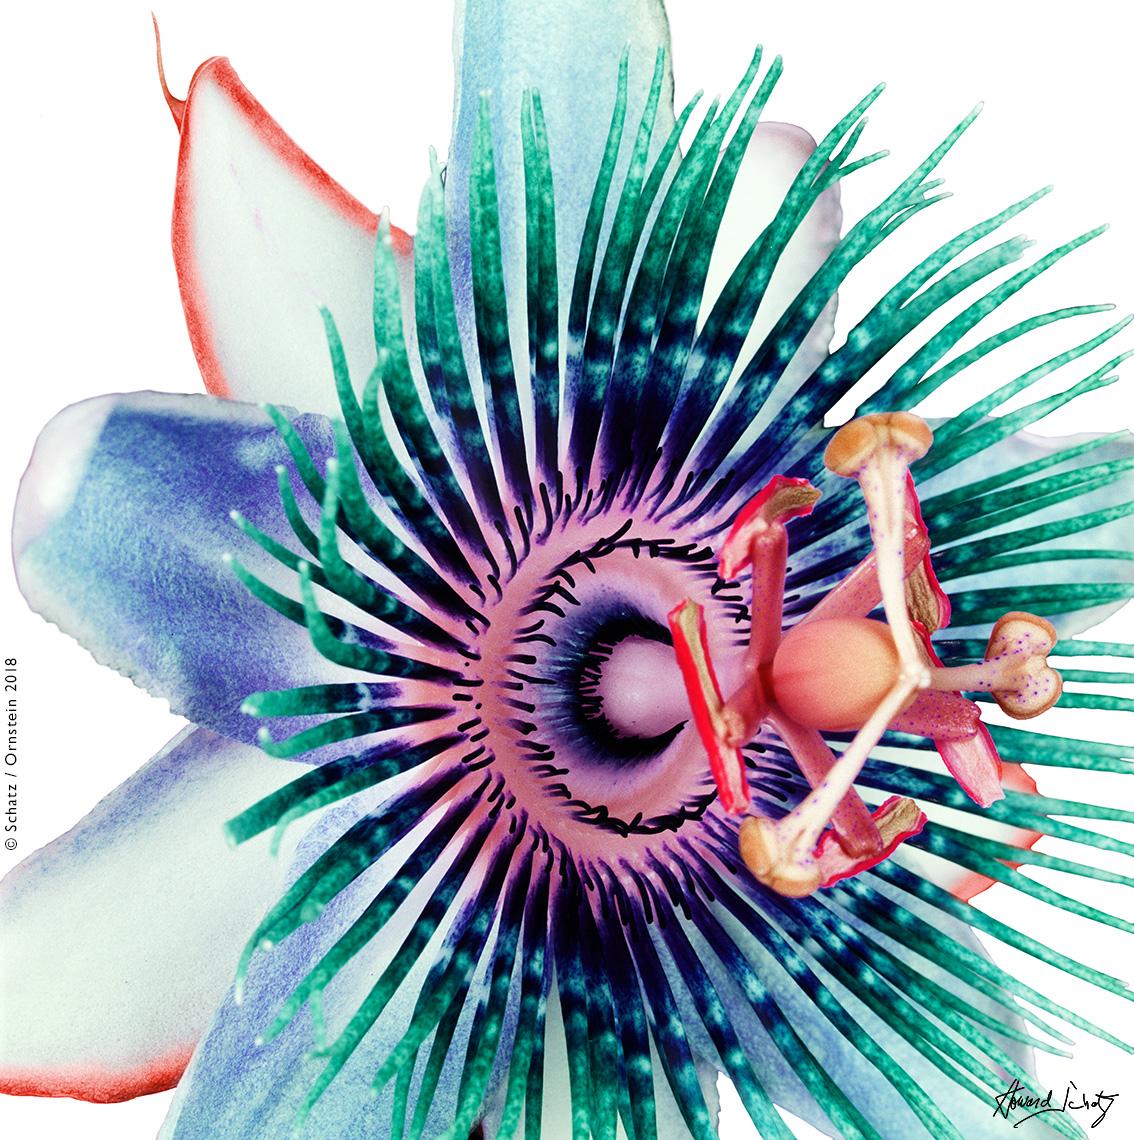 Abstract Photograph Howard Schatz - Passion Flower n°1, de la série Botanica